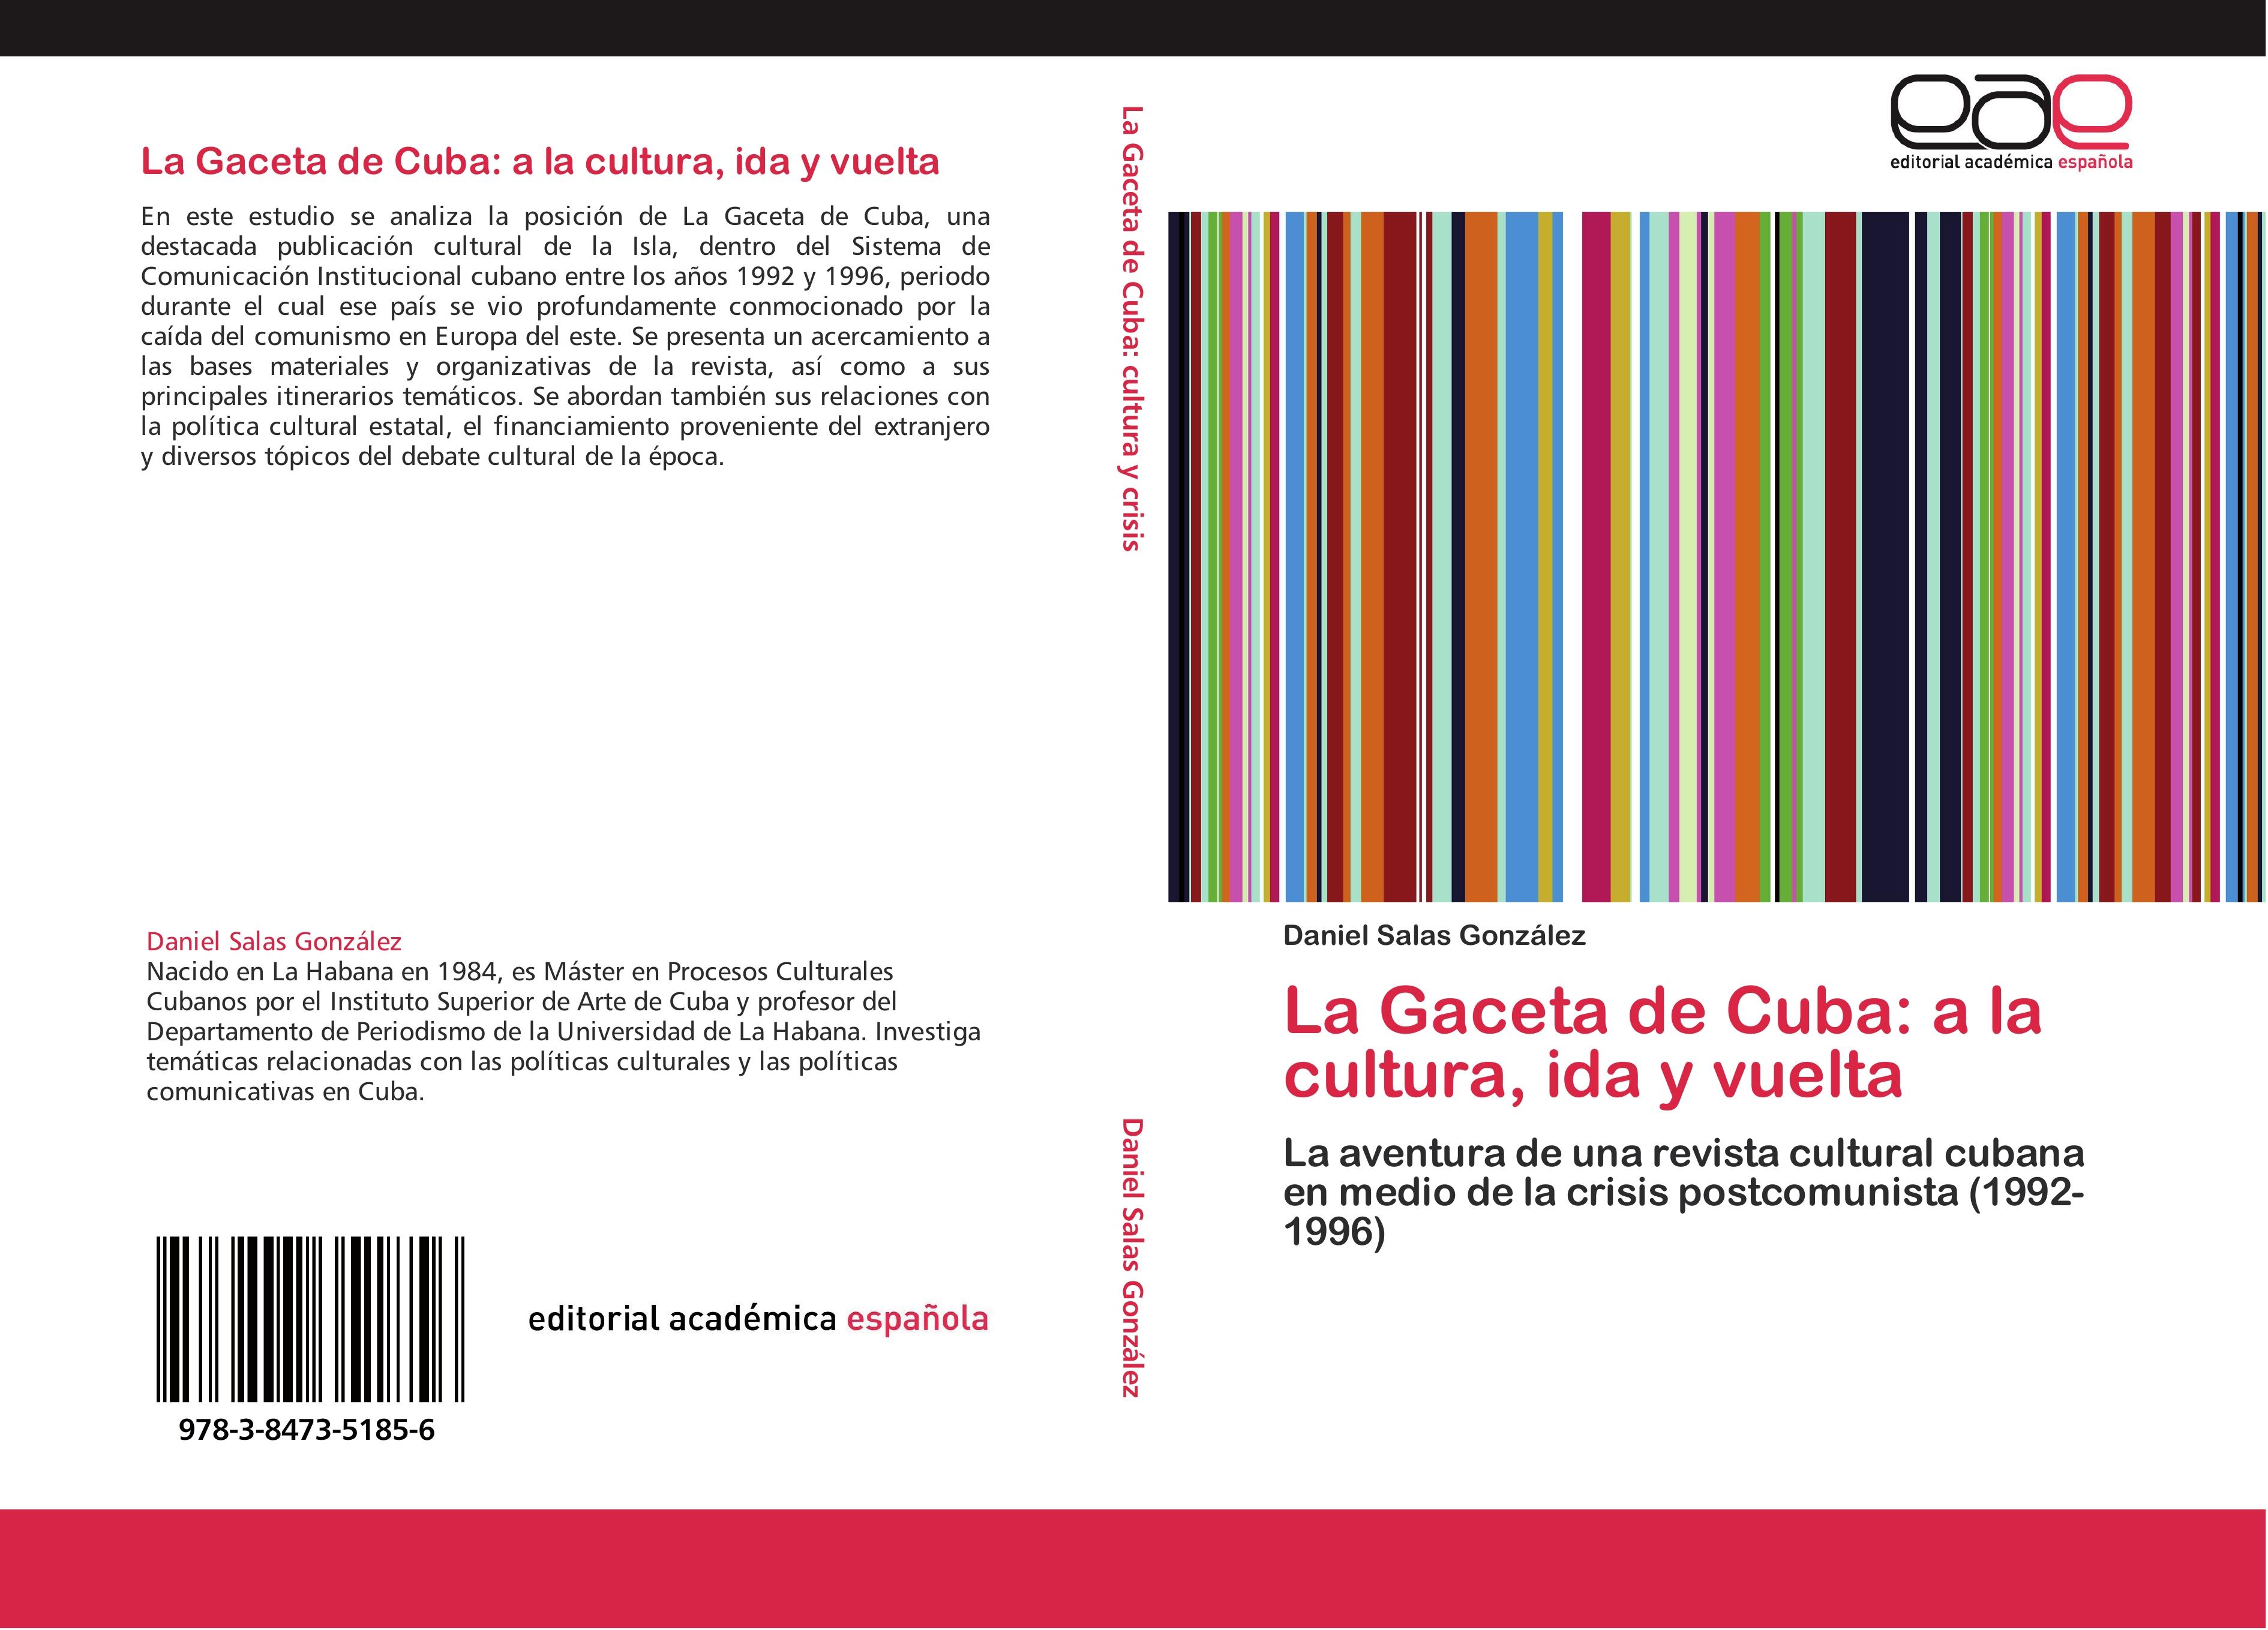 La Gaceta de Cuba: a la cultura, ida y vuelta - Daniel Salas González